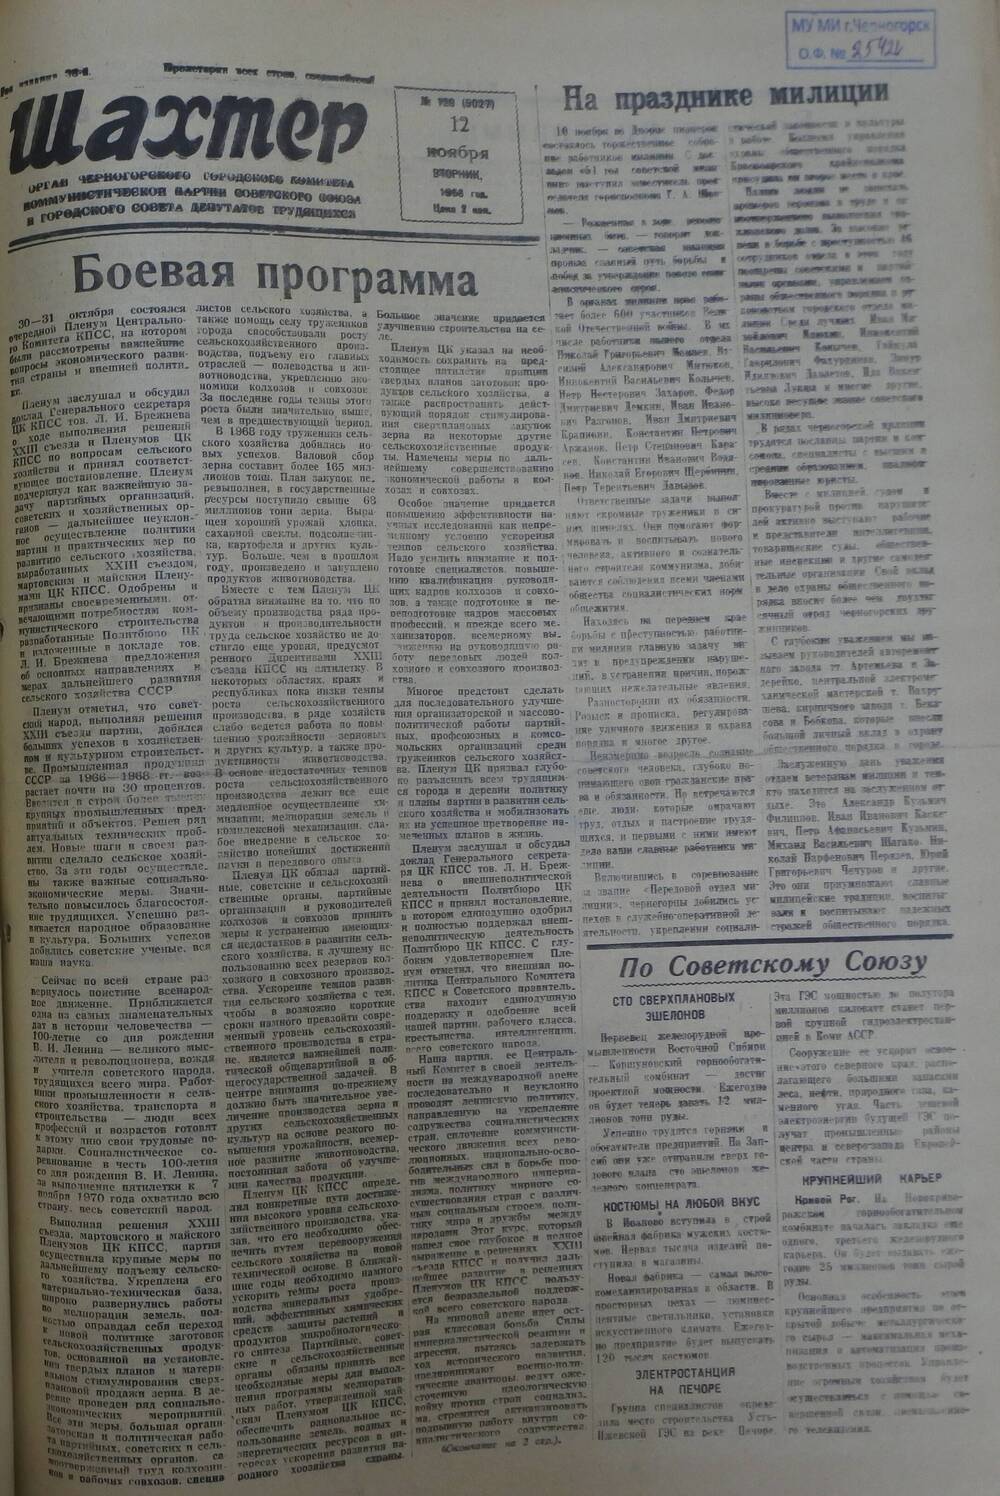 Газета «Шахтер». Выпуск № 129 от 12.11.1968 г.